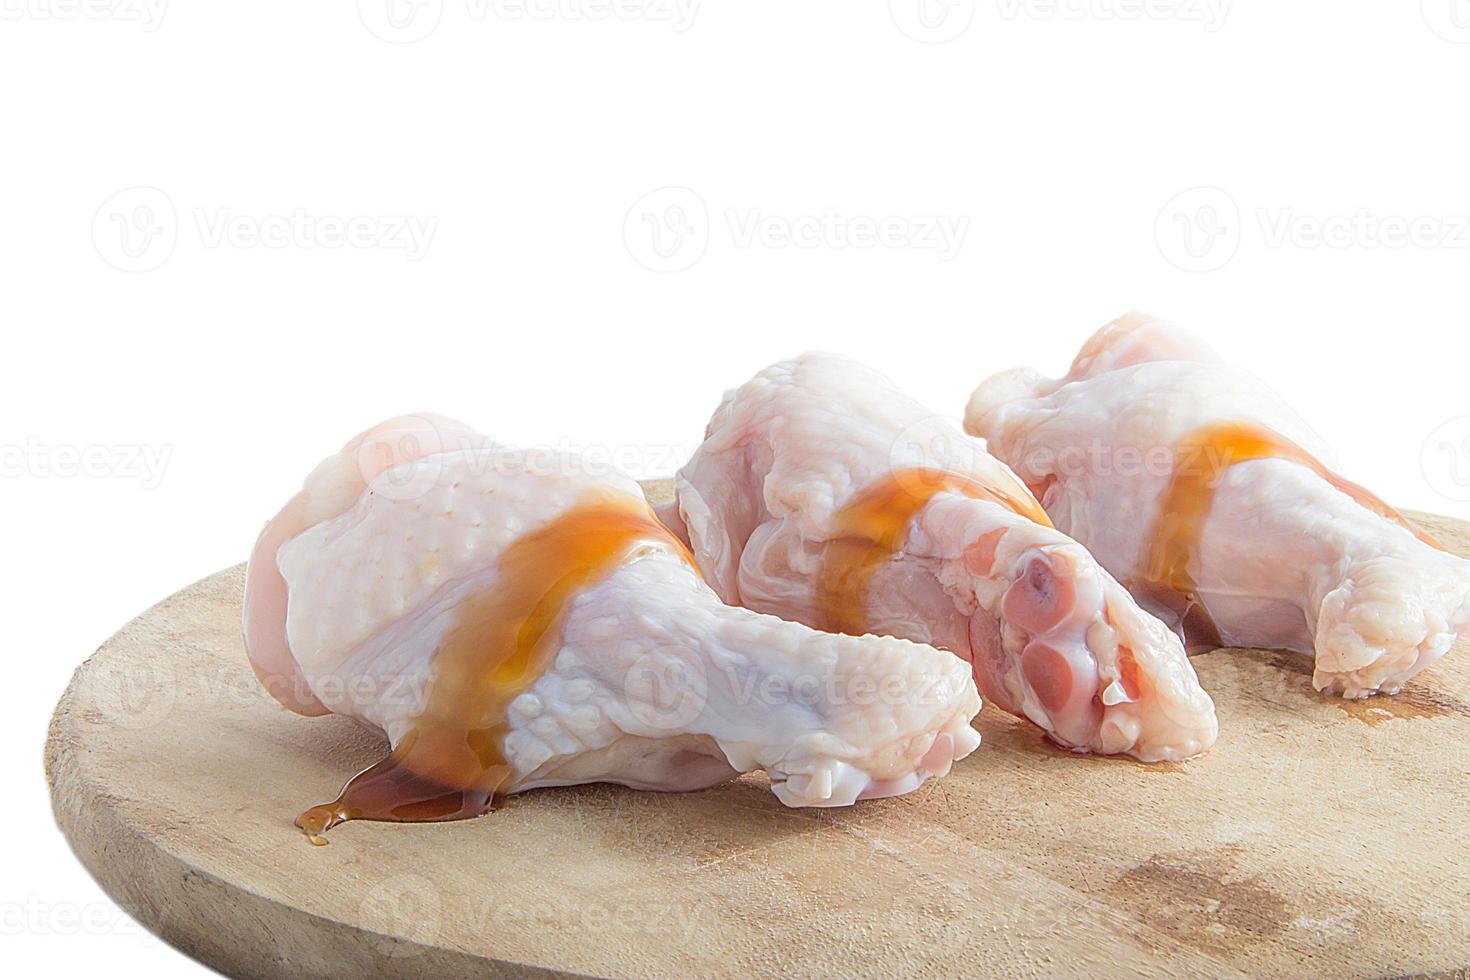 pernas de frango cru em tábuas de madeira no fundo branco foto